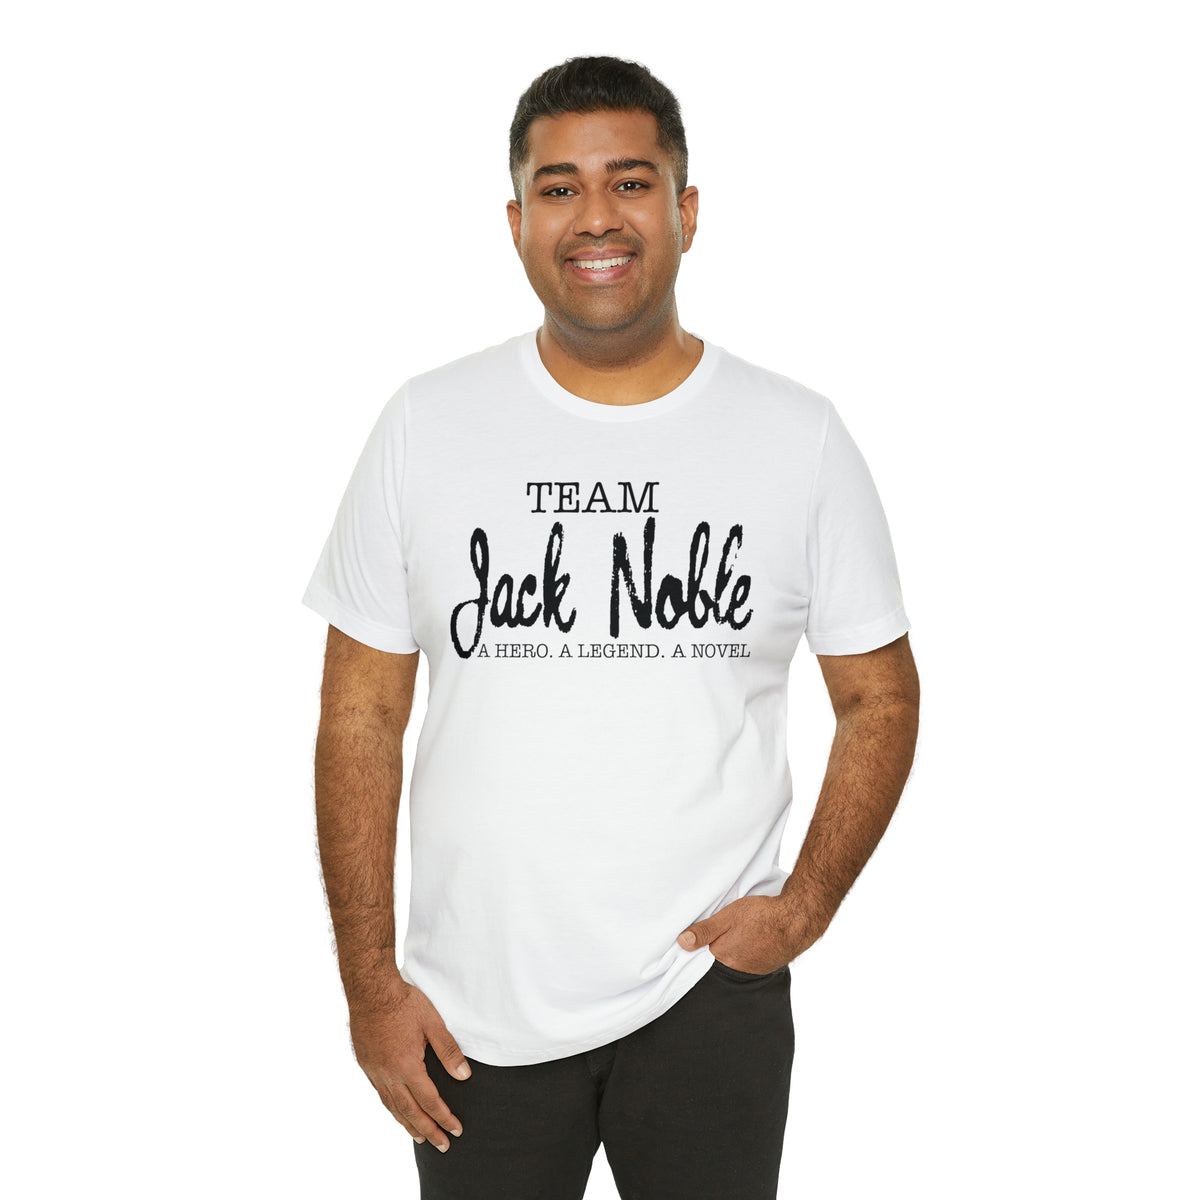 Team Jack Noble. A Hero. A Legend. A Novel.